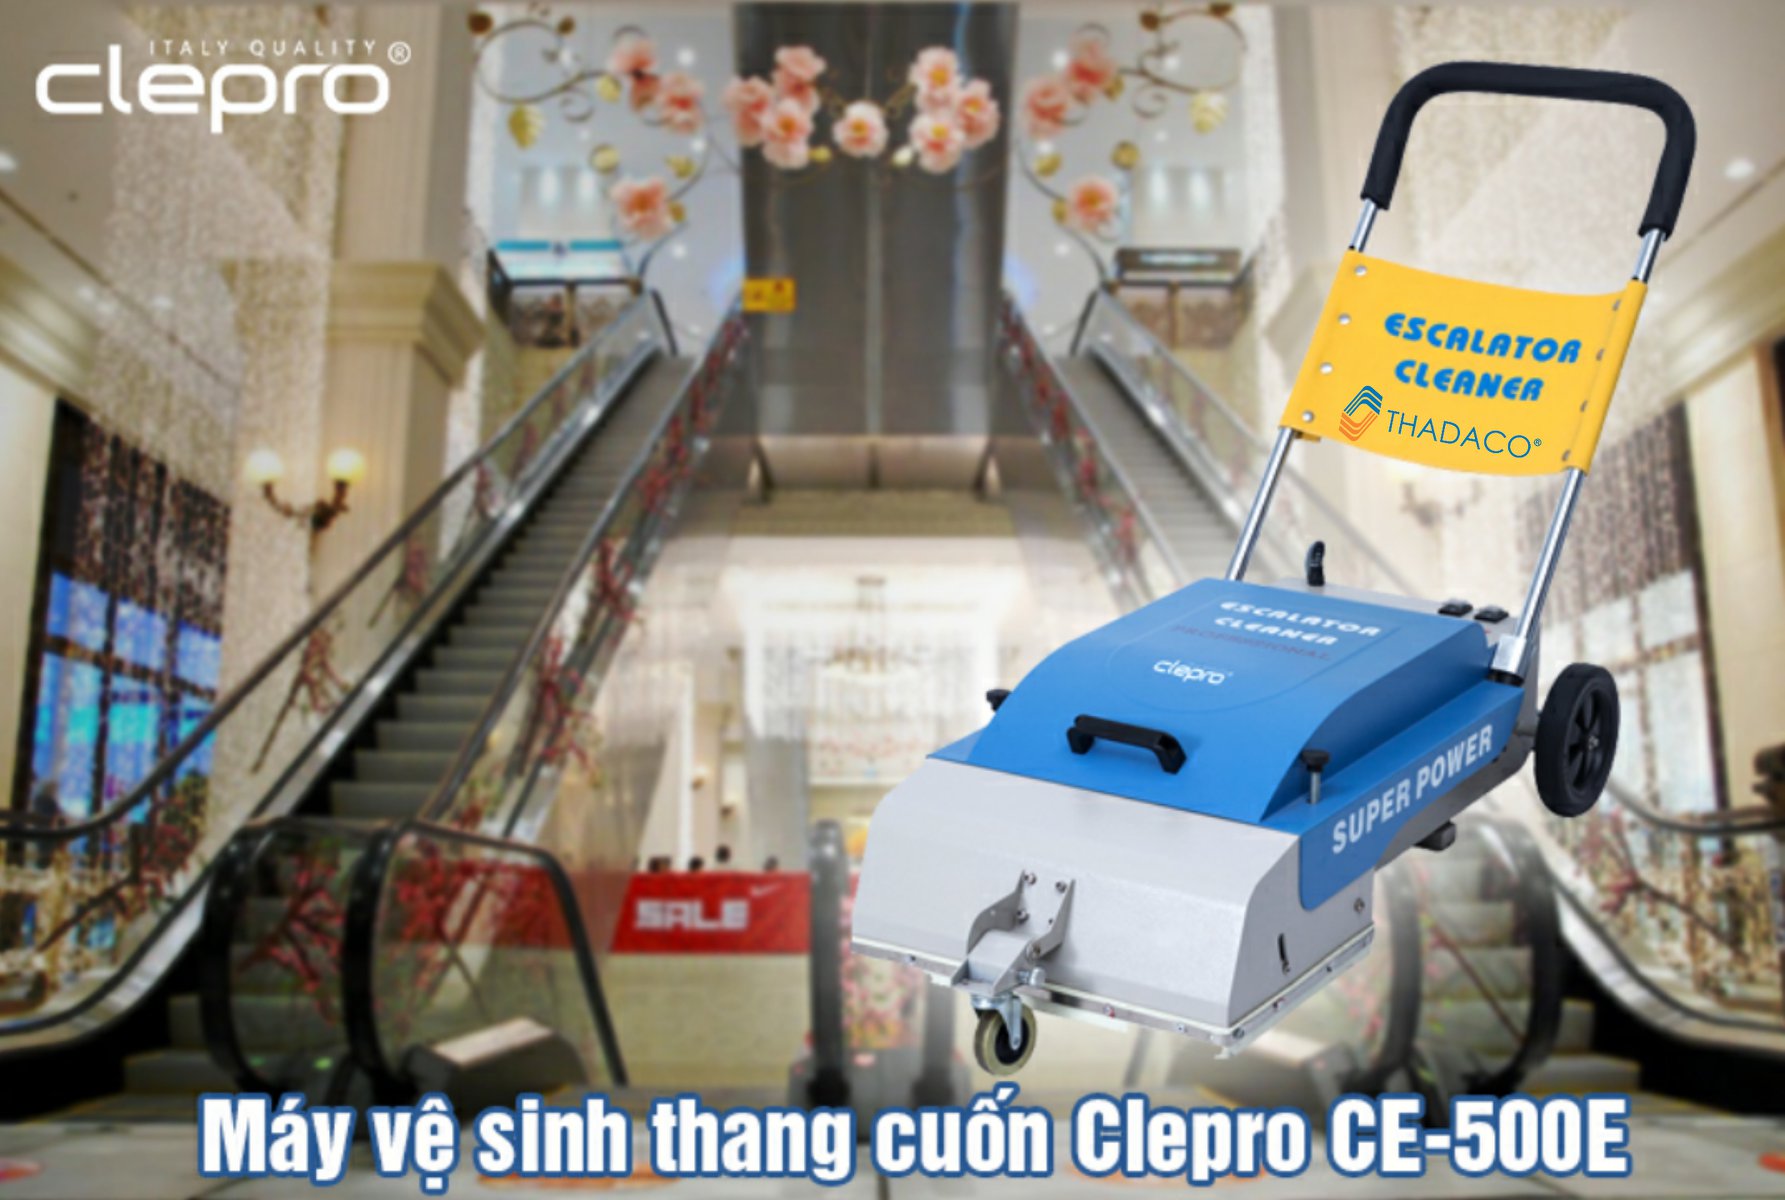 Clepro CE-500E